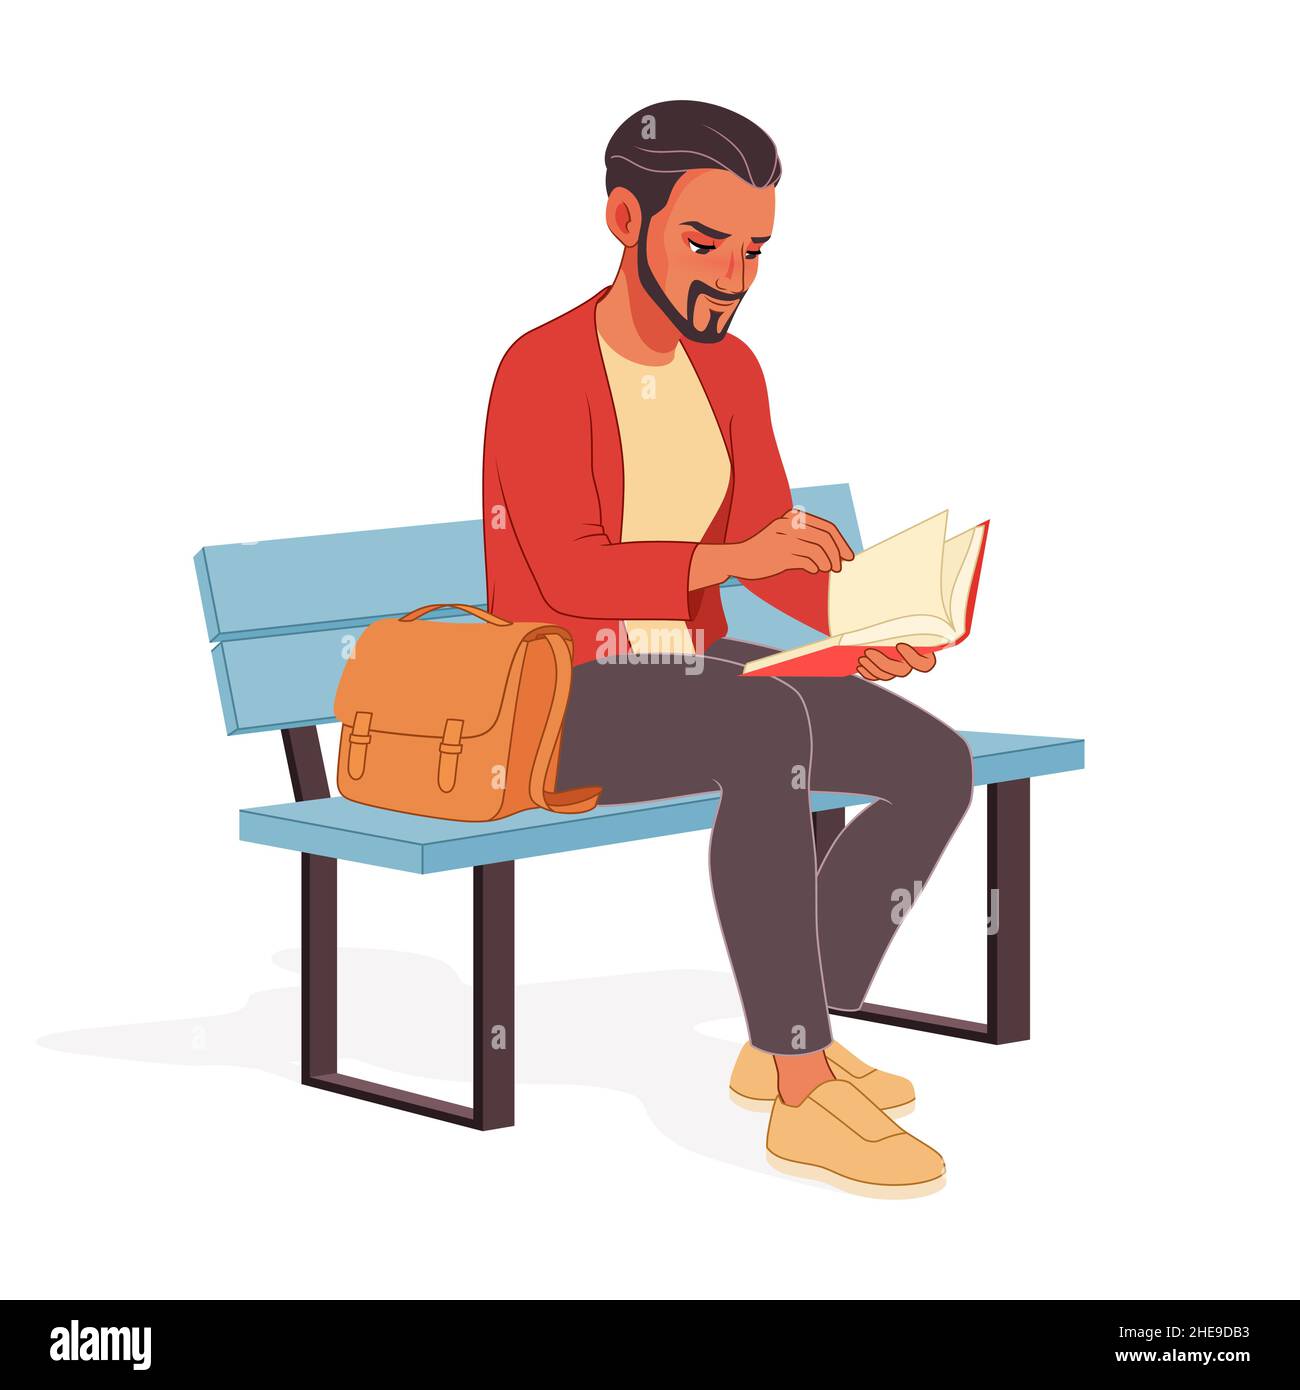 Jeune homme lisant un livre intéressant en étant assis sur le banc.Illustration vectorielle. Illustration de Vecteur